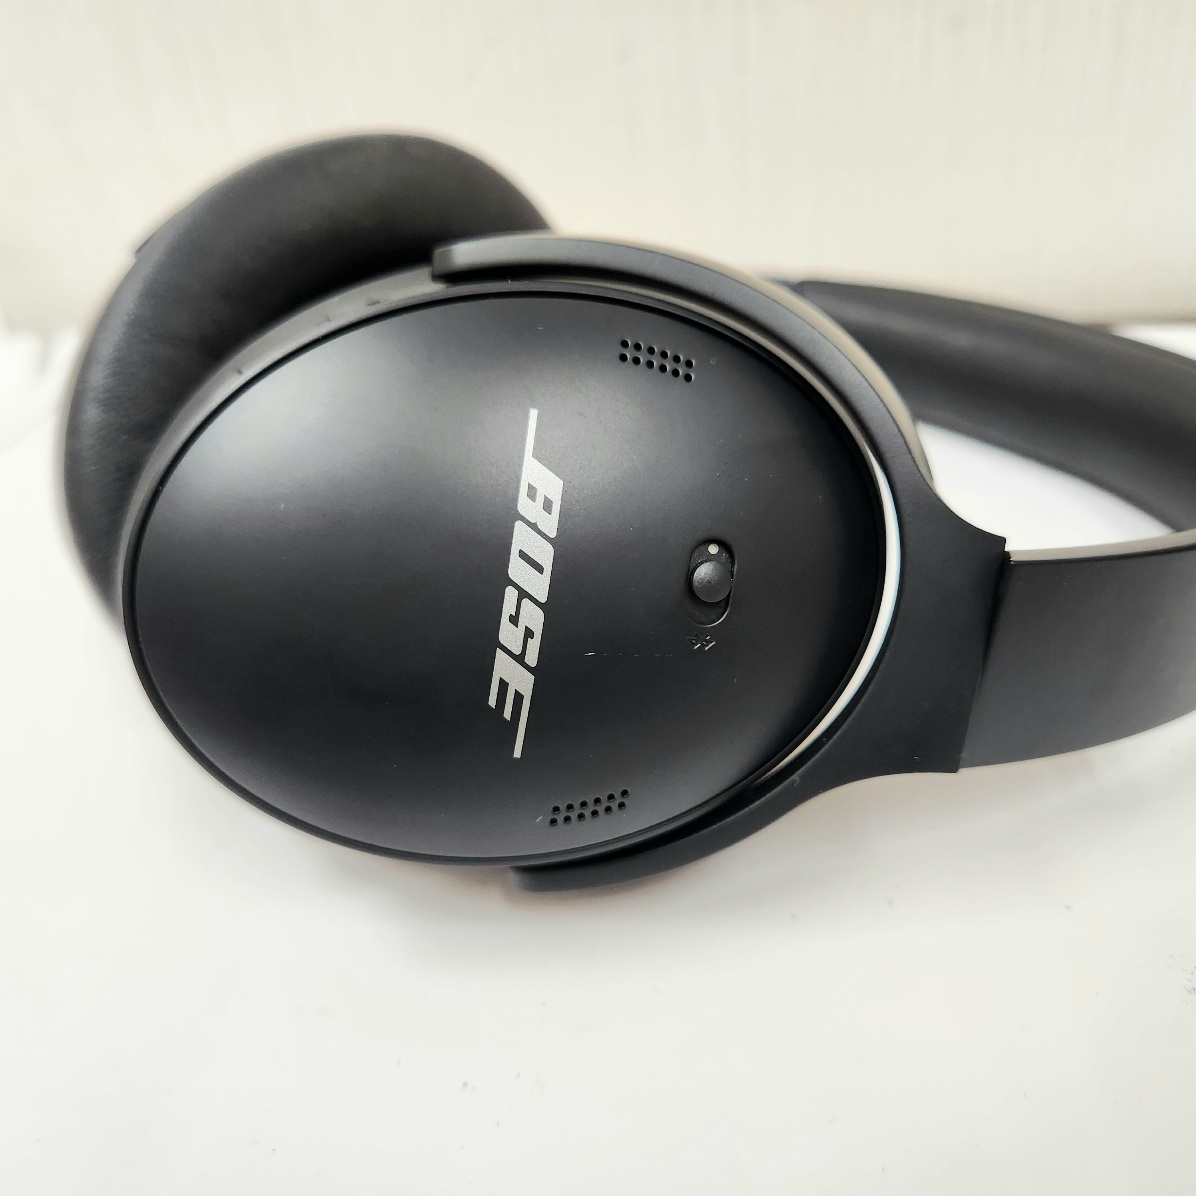 C-04121K[ подключение проверка settled ]Bose QuietComfort 45 Bluetooth беспроводные наушники звуковая аппаратура шум отмена музыка хорошо звук 